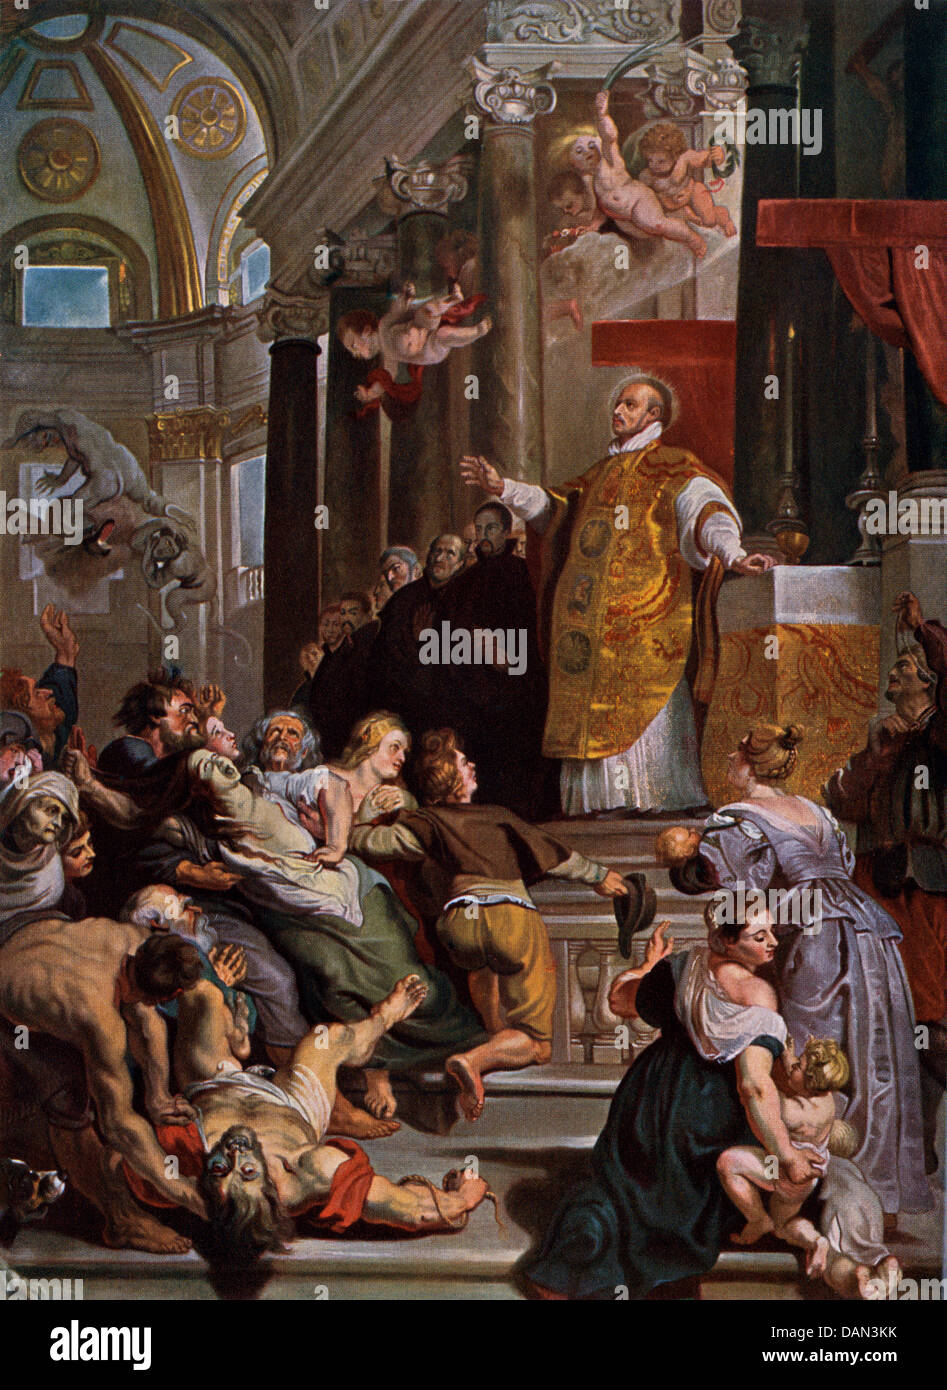 Ignatius von Loyola Austreibung böser Geister. Farbe halftone Reproduktion von einem Gemälde von Rubens Stockfoto